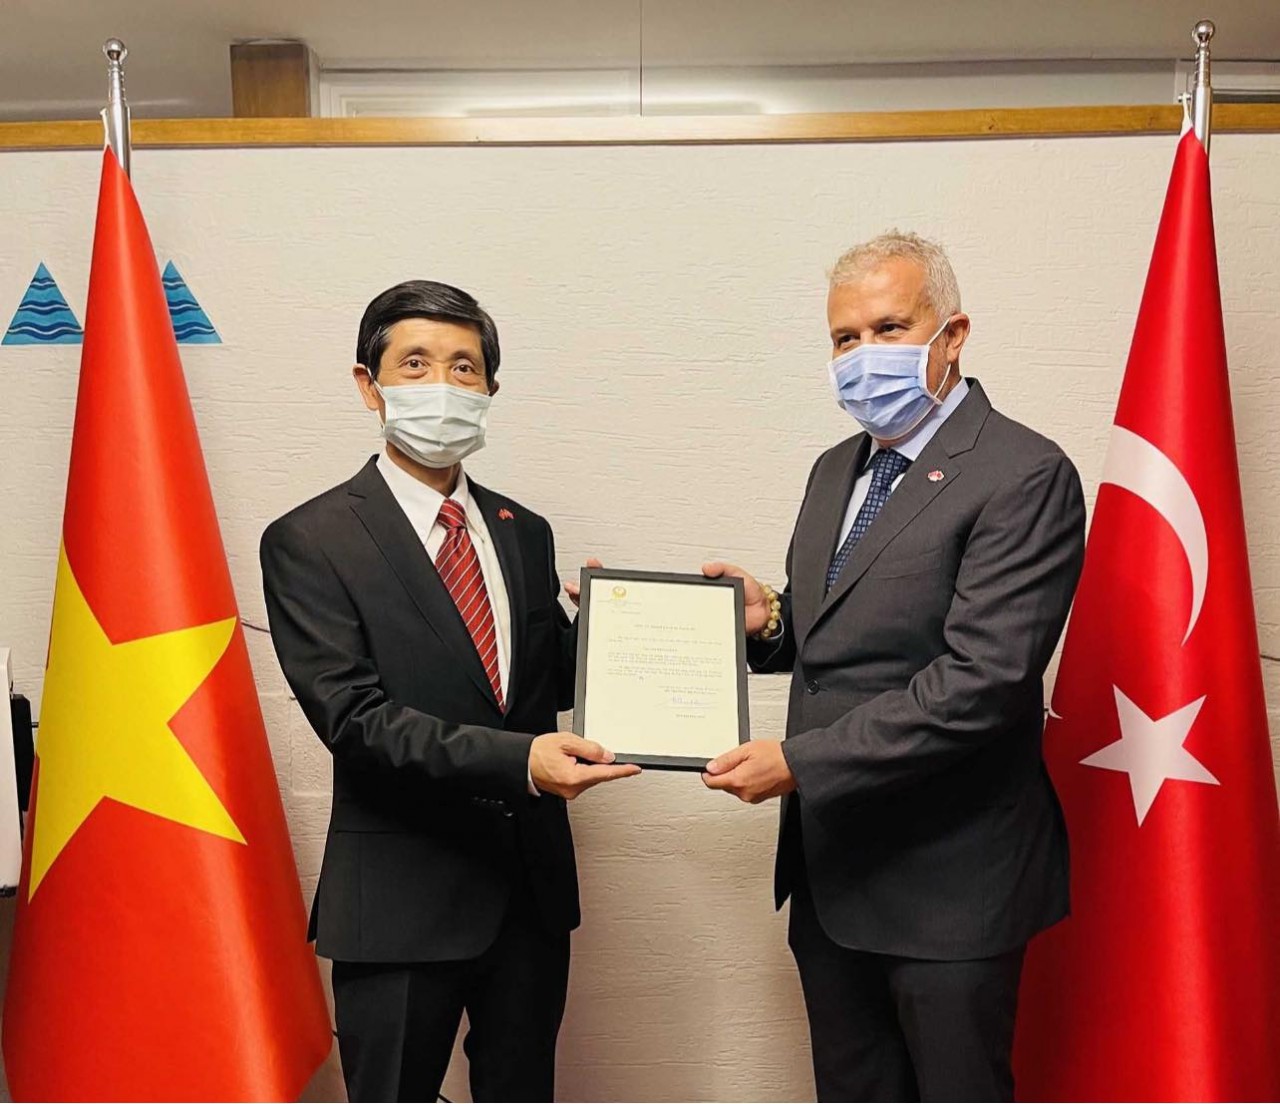 Khai trương Văn phòng Lãnh sự danh dự đầu tiên của Việt Nam tại Thổ Nhĩ Kỳ